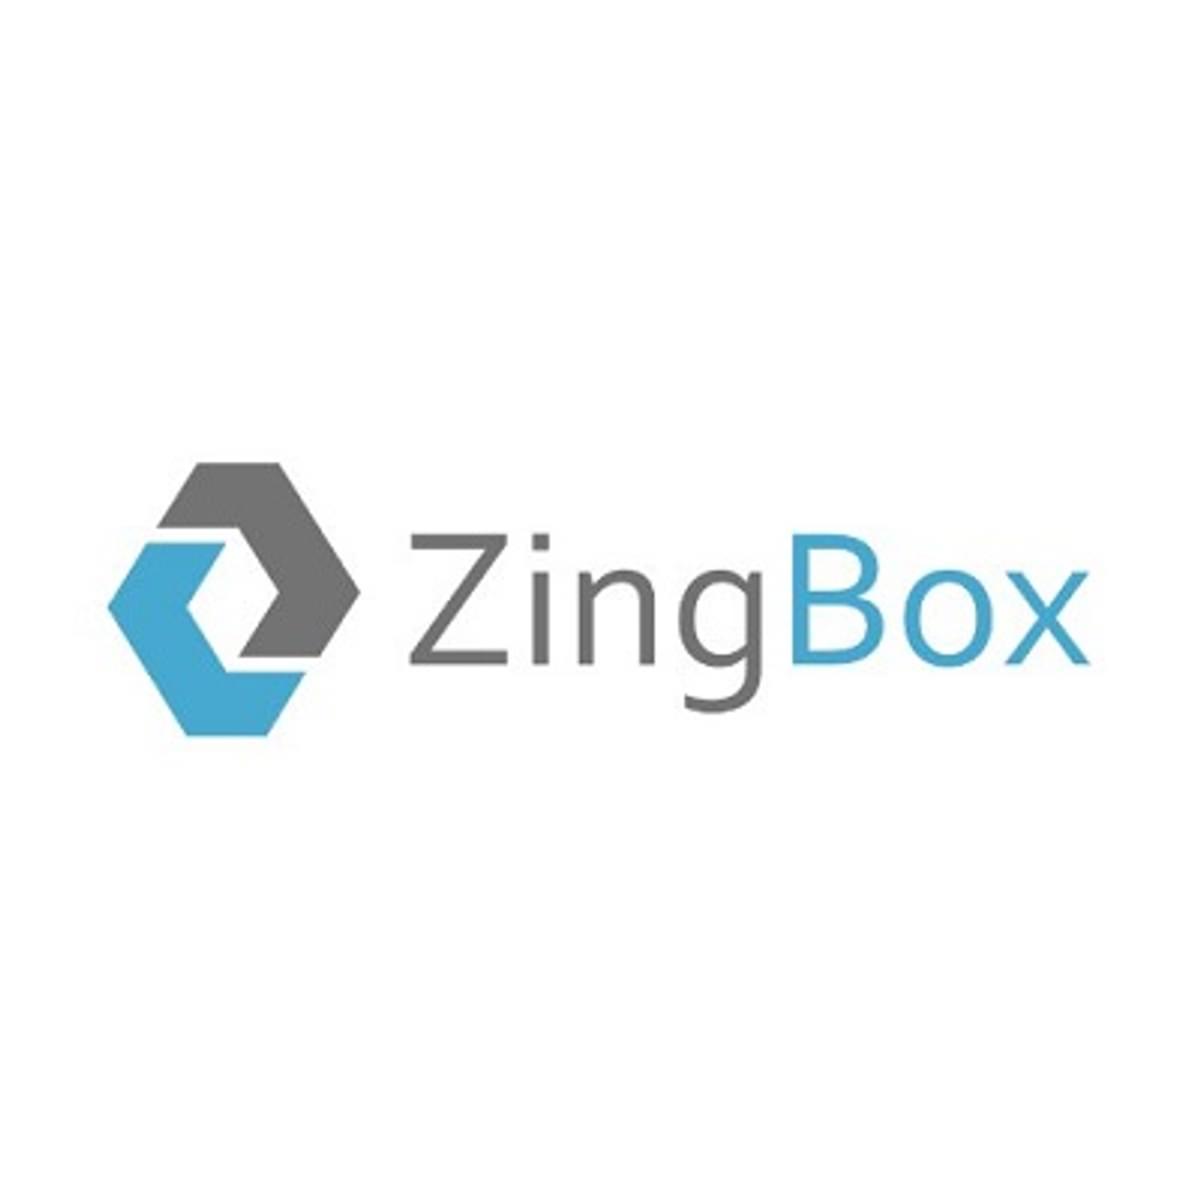 IoT startup Zingbox krijgt 22 miljoen dollar kapitaalinjectie van Dell image